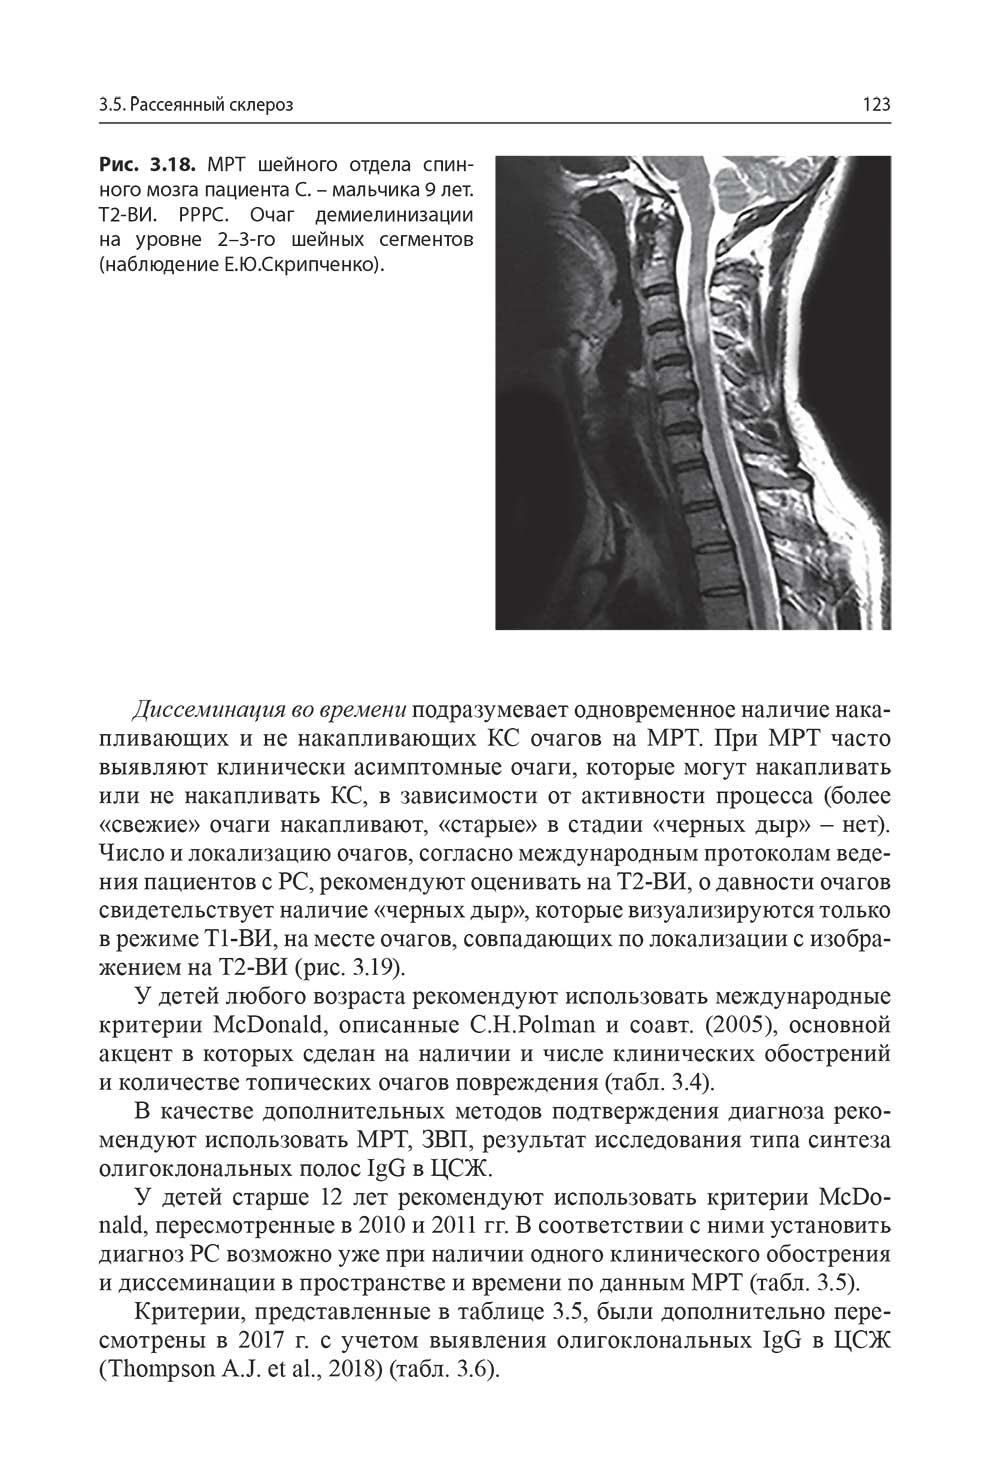 Рис. 3.18. MPT шейного отдела спинного мозга пациента С. - мальчика 9 лет.